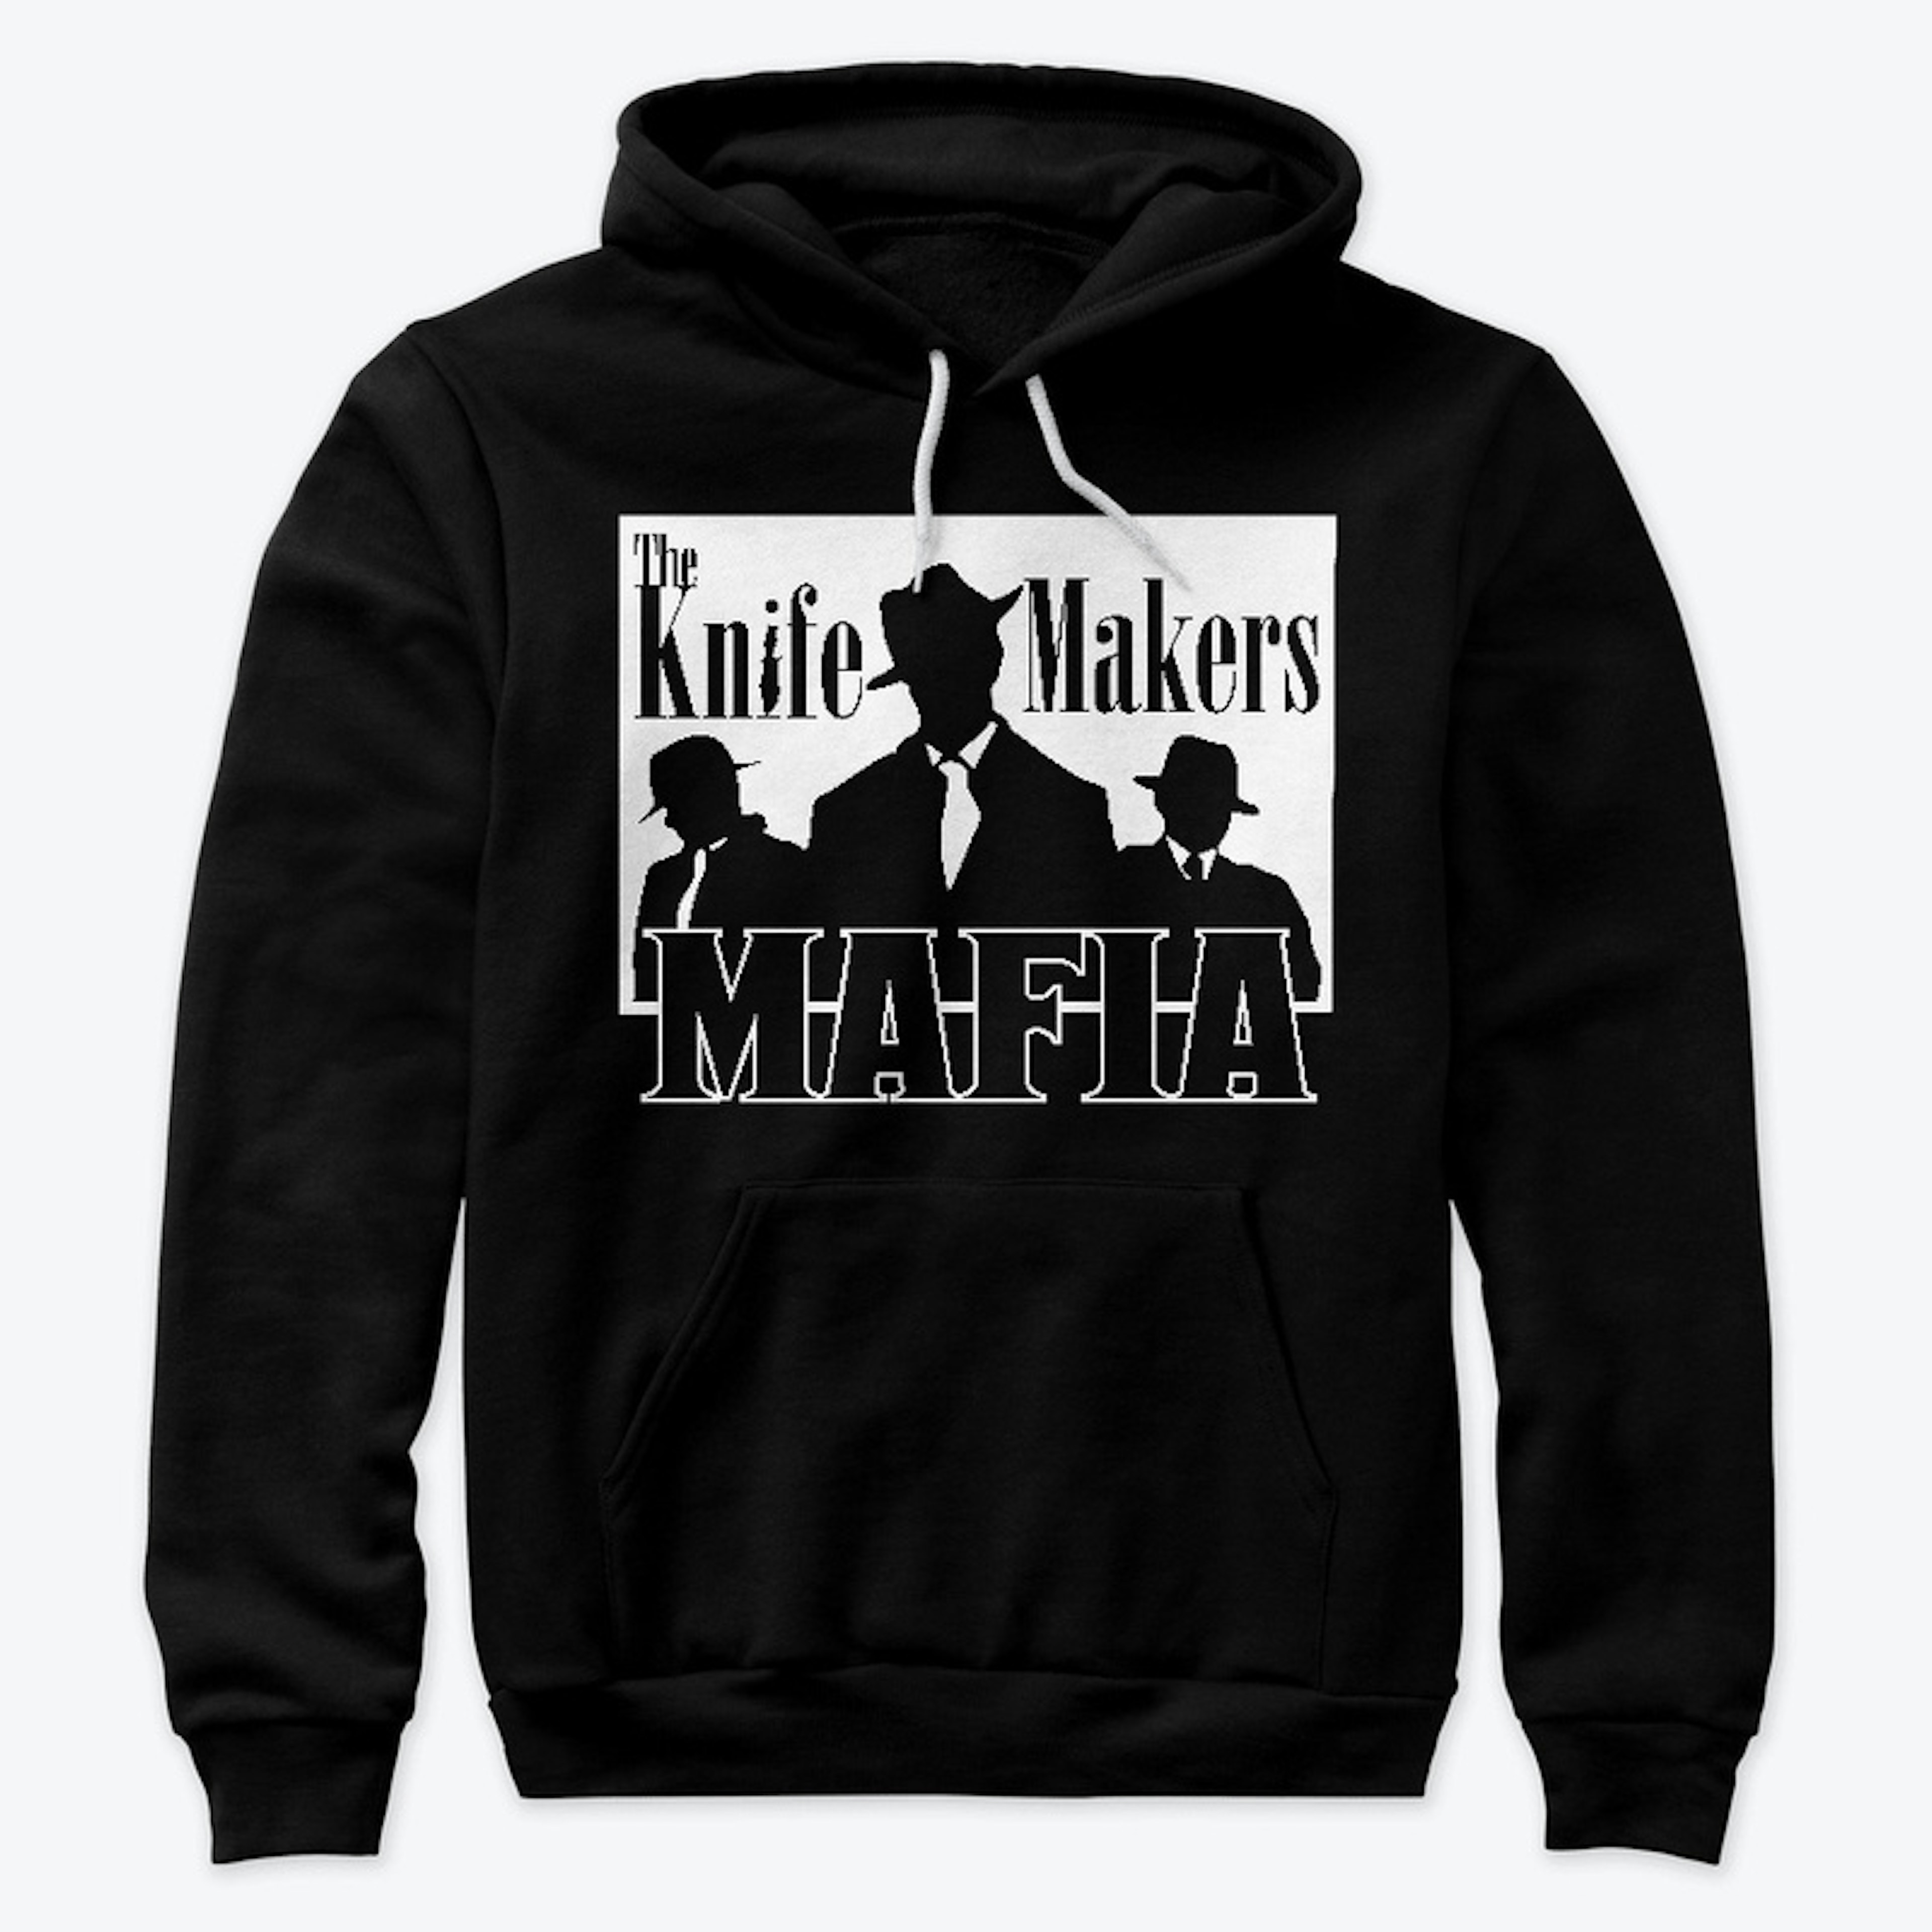 The Knife Makers Mafia